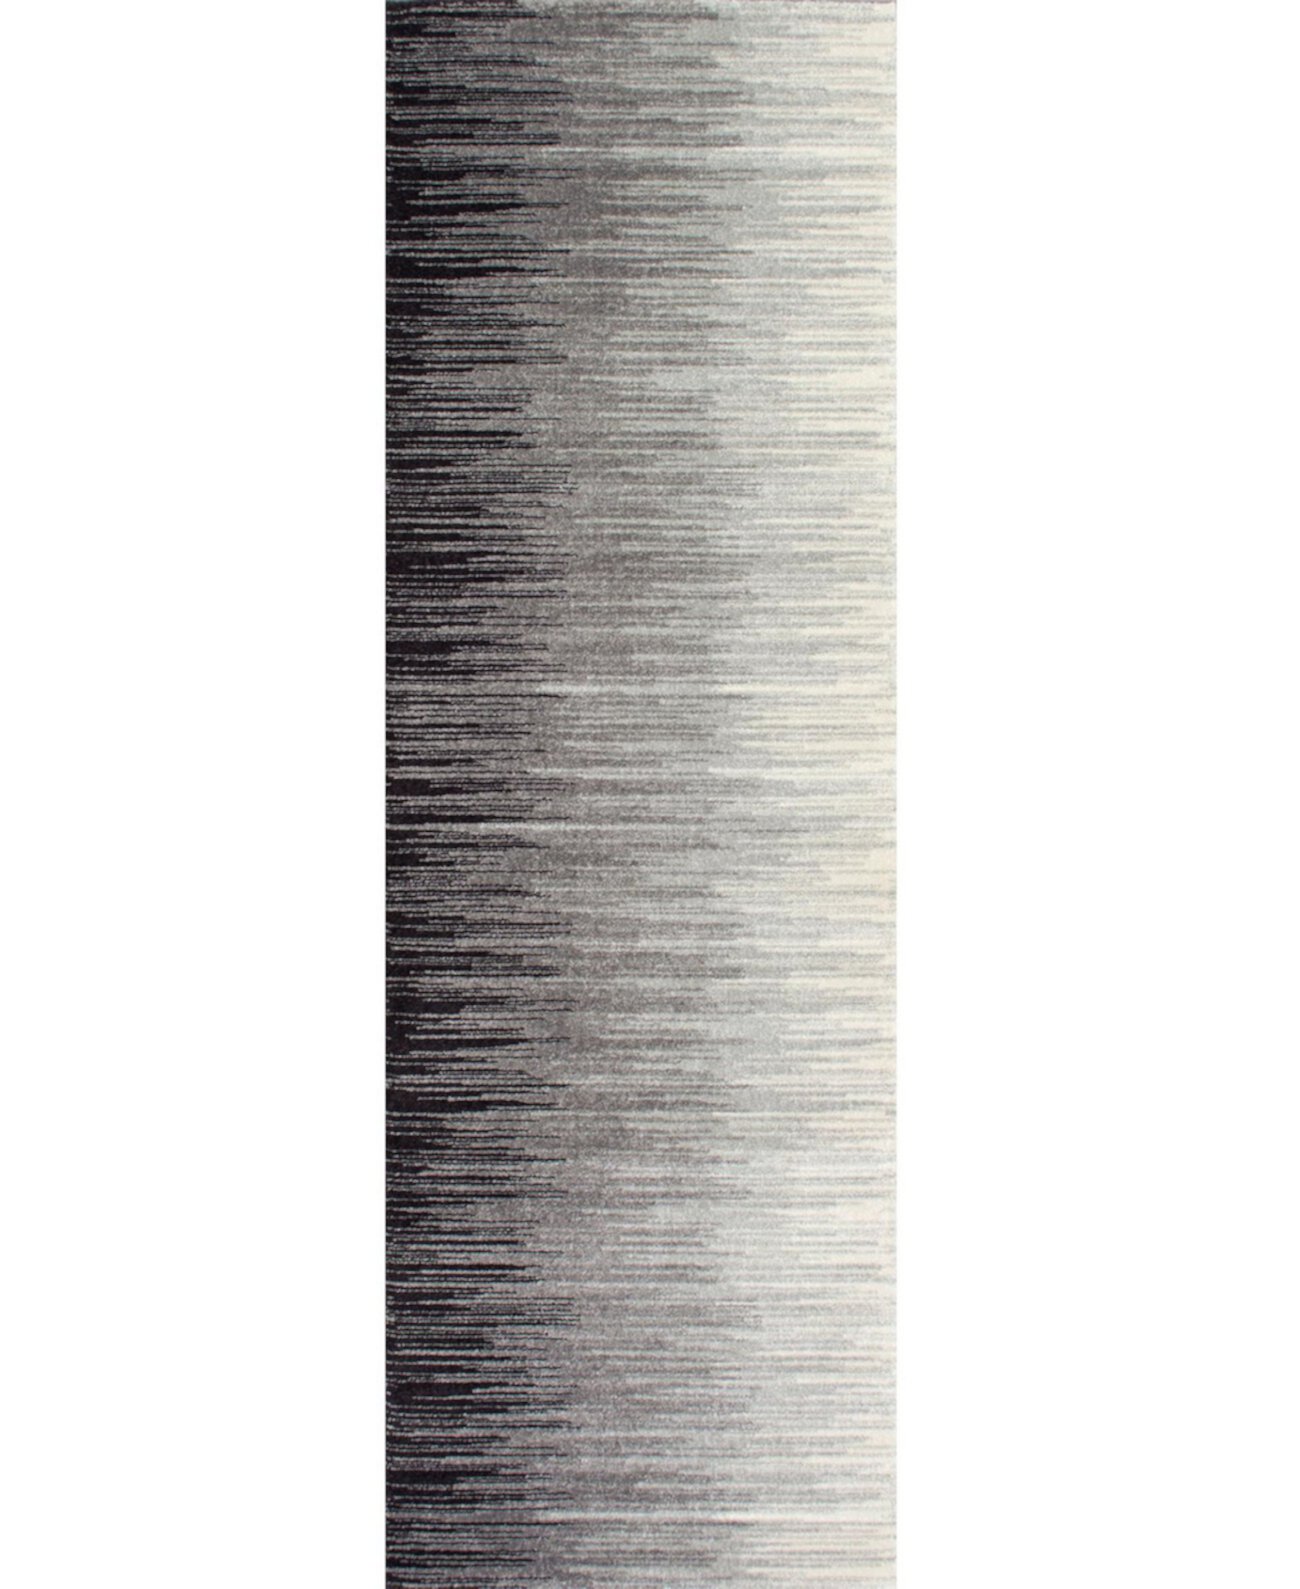 Lexie RZBD15A Черный коврик для беговой дорожки размером 2 х 6 футов NuLOOM